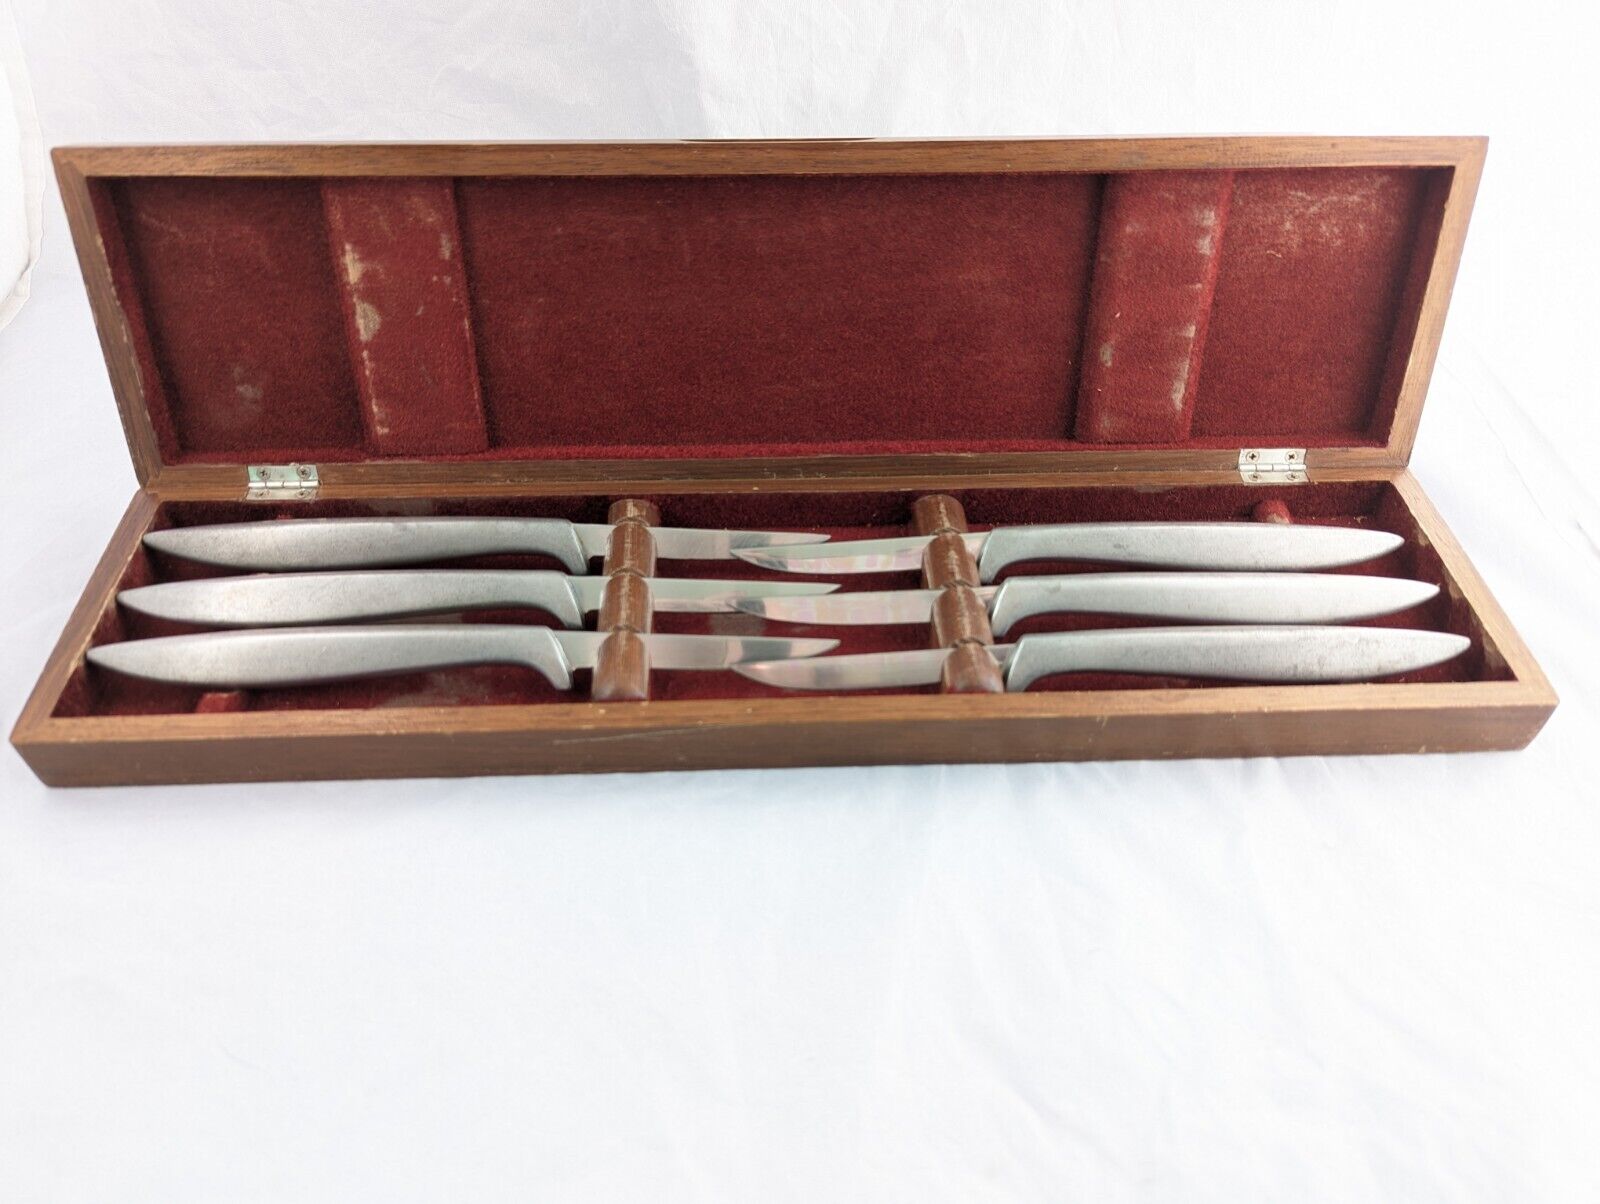 Vtg 1947 Gerber Miming Steak Knives Set of 6 Wood Case Hand Made Blades USA